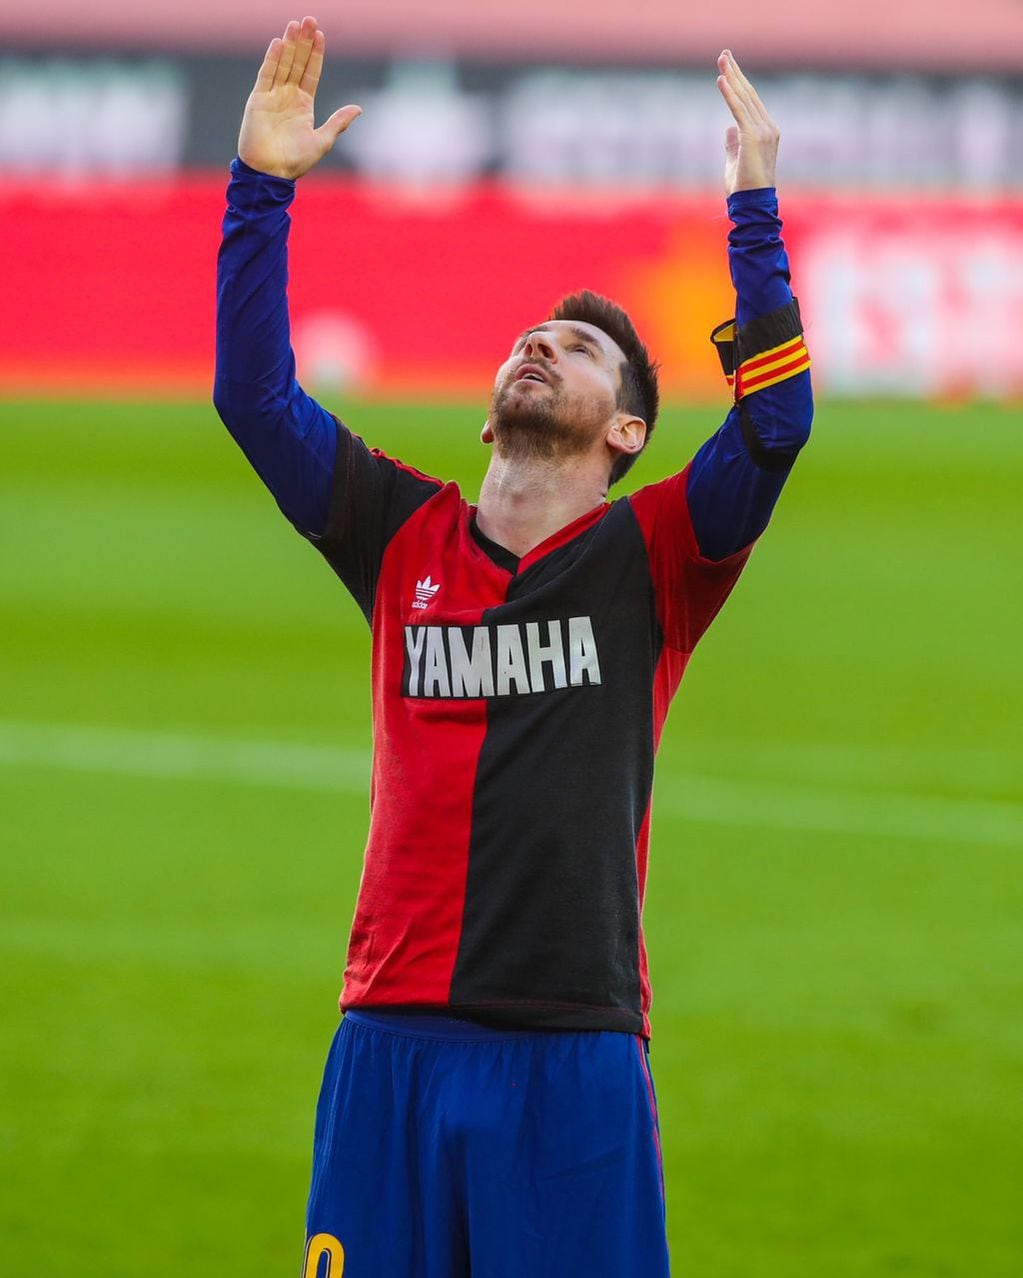 Luego de convertir un gol, el capitán de la Selección Argentina emocionó a todos con su gesto. Foto: @barcelona.